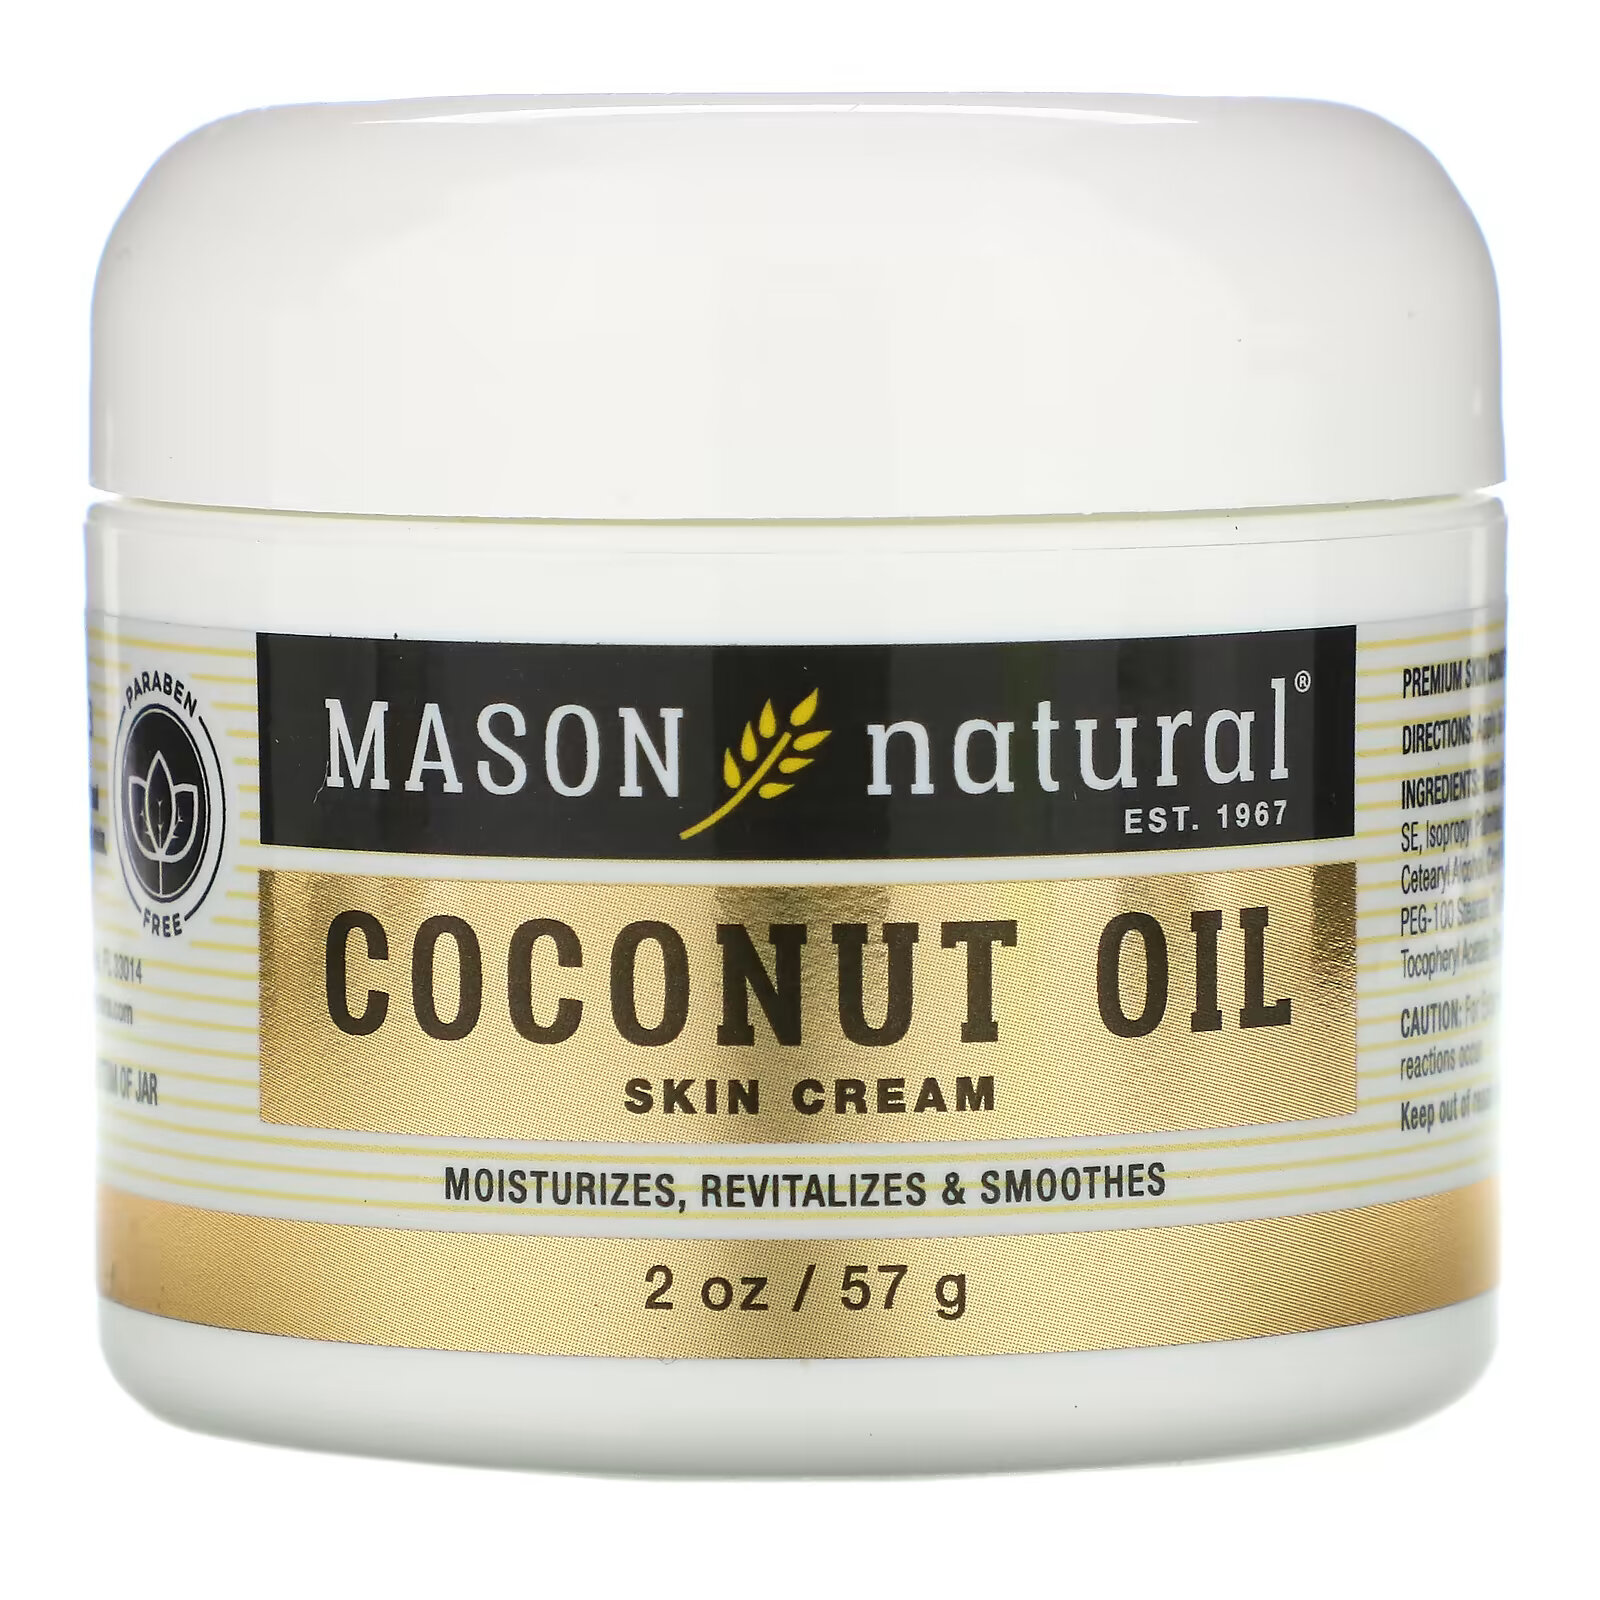 Крем Mason Natural для кожи с кокосовым маслом, 57 г mason natural крем для кожи с кокосовым маслом 57 г 2 унции